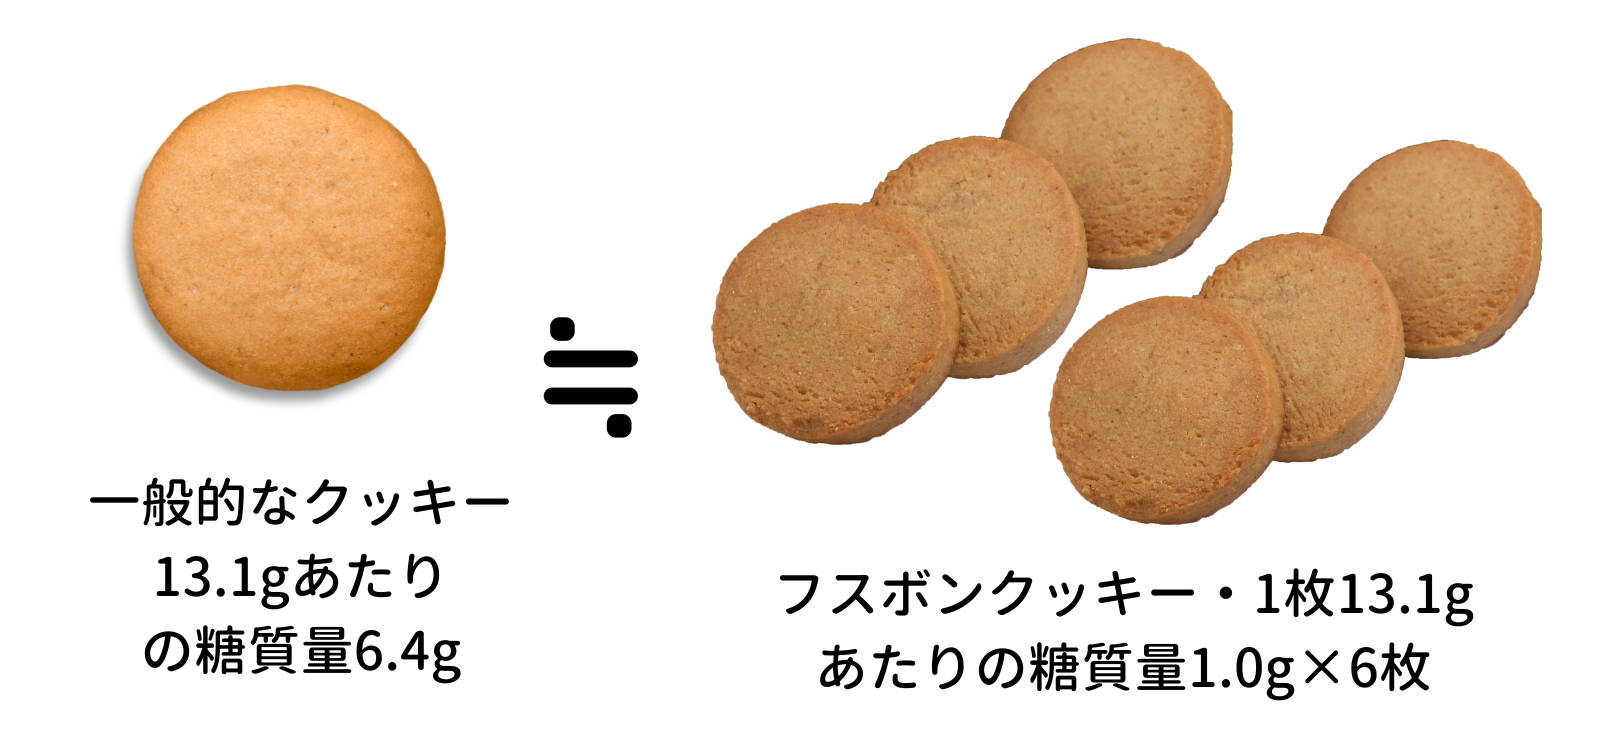 一般的なクッキーとフスボンのプレーンの糖質の比較